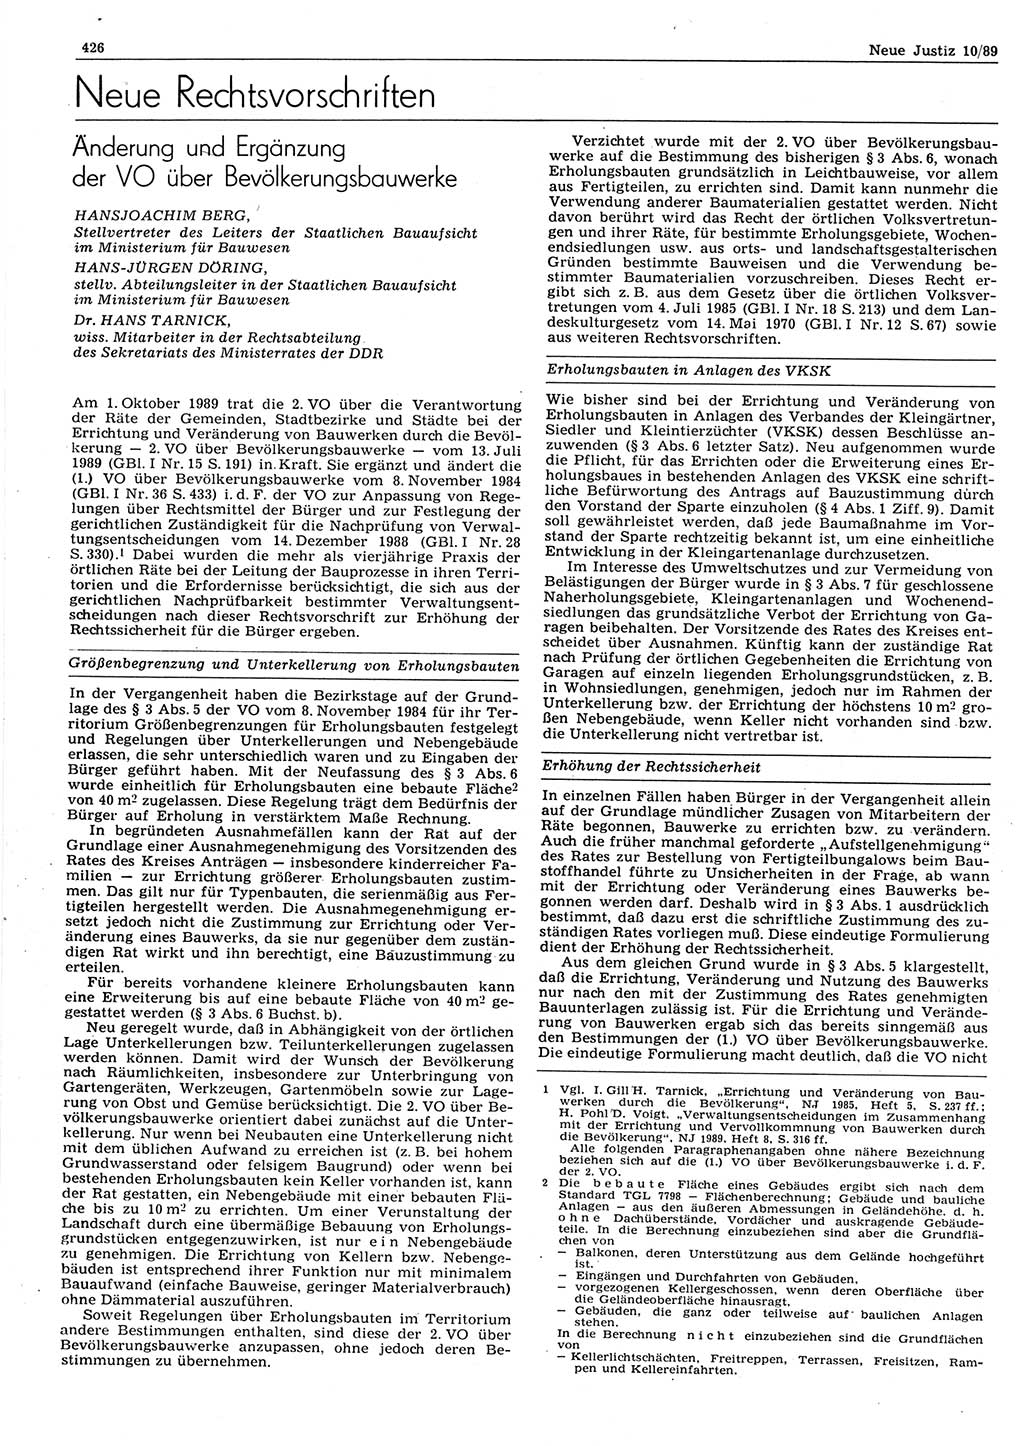 Neue Justiz (NJ), Zeitschrift für sozialistisches Recht und Gesetzlichkeit [Deutsche Demokratische Republik (DDR)], 43. Jahrgang 1989, Seite 426 (NJ DDR 1989, S. 426)